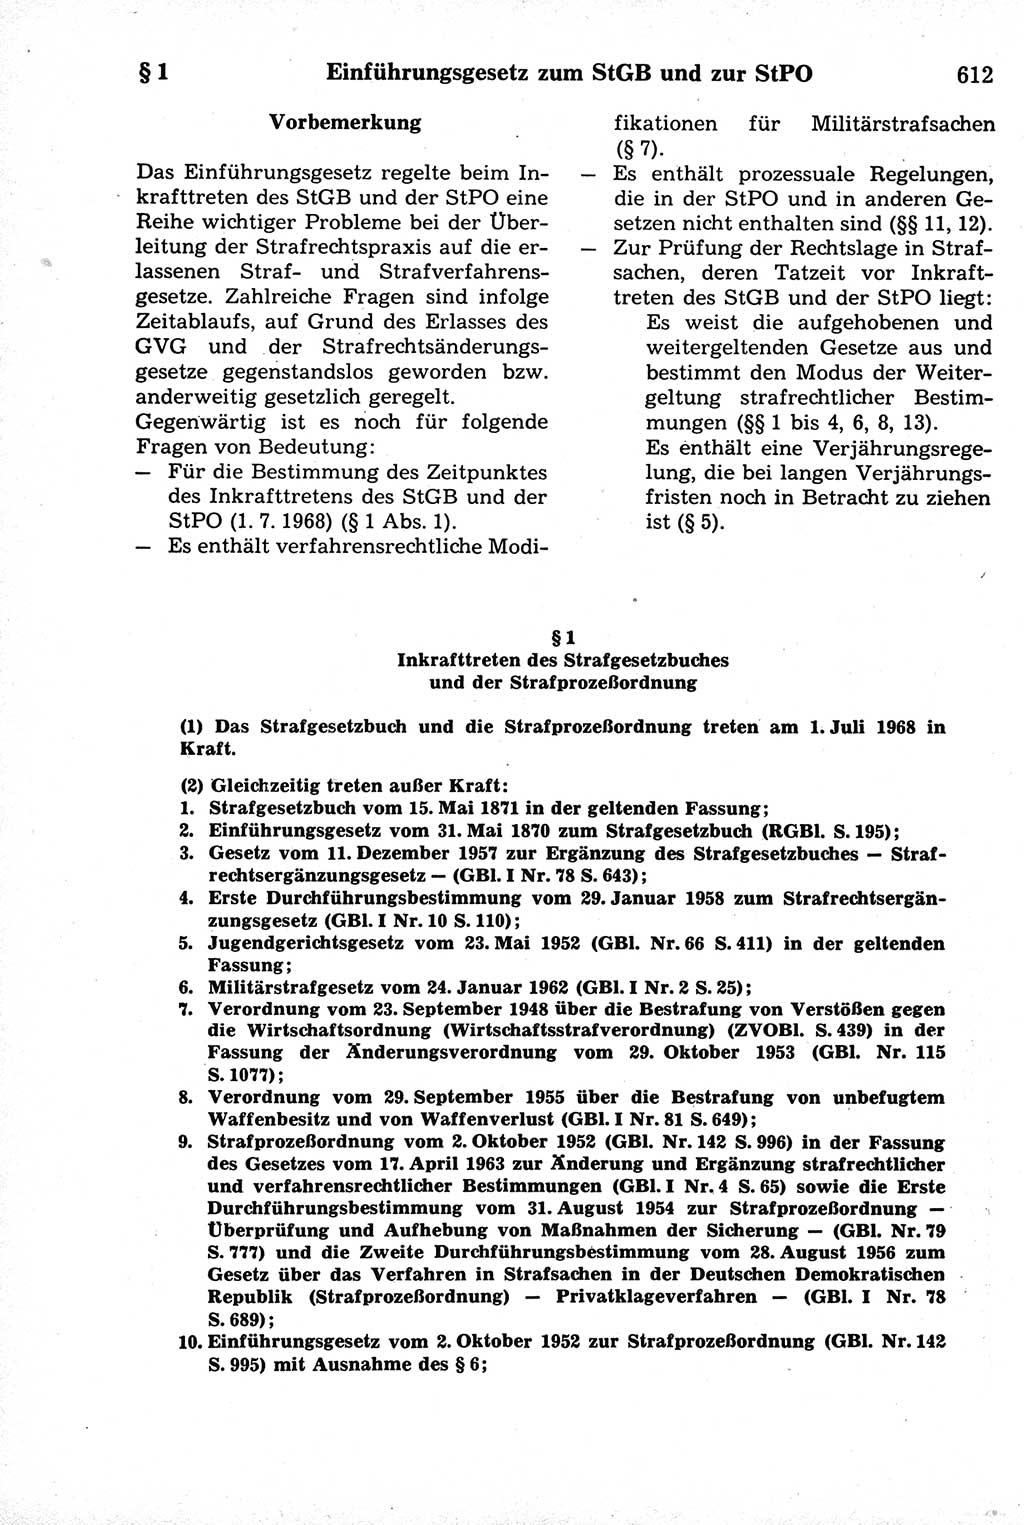 Strafrecht der Deutschen Demokratischen Republik (DDR), Kommentar zum Strafgesetzbuch (StGB) 1981, Seite 612 (Strafr. DDR Komm. StGB 1981, S. 612)